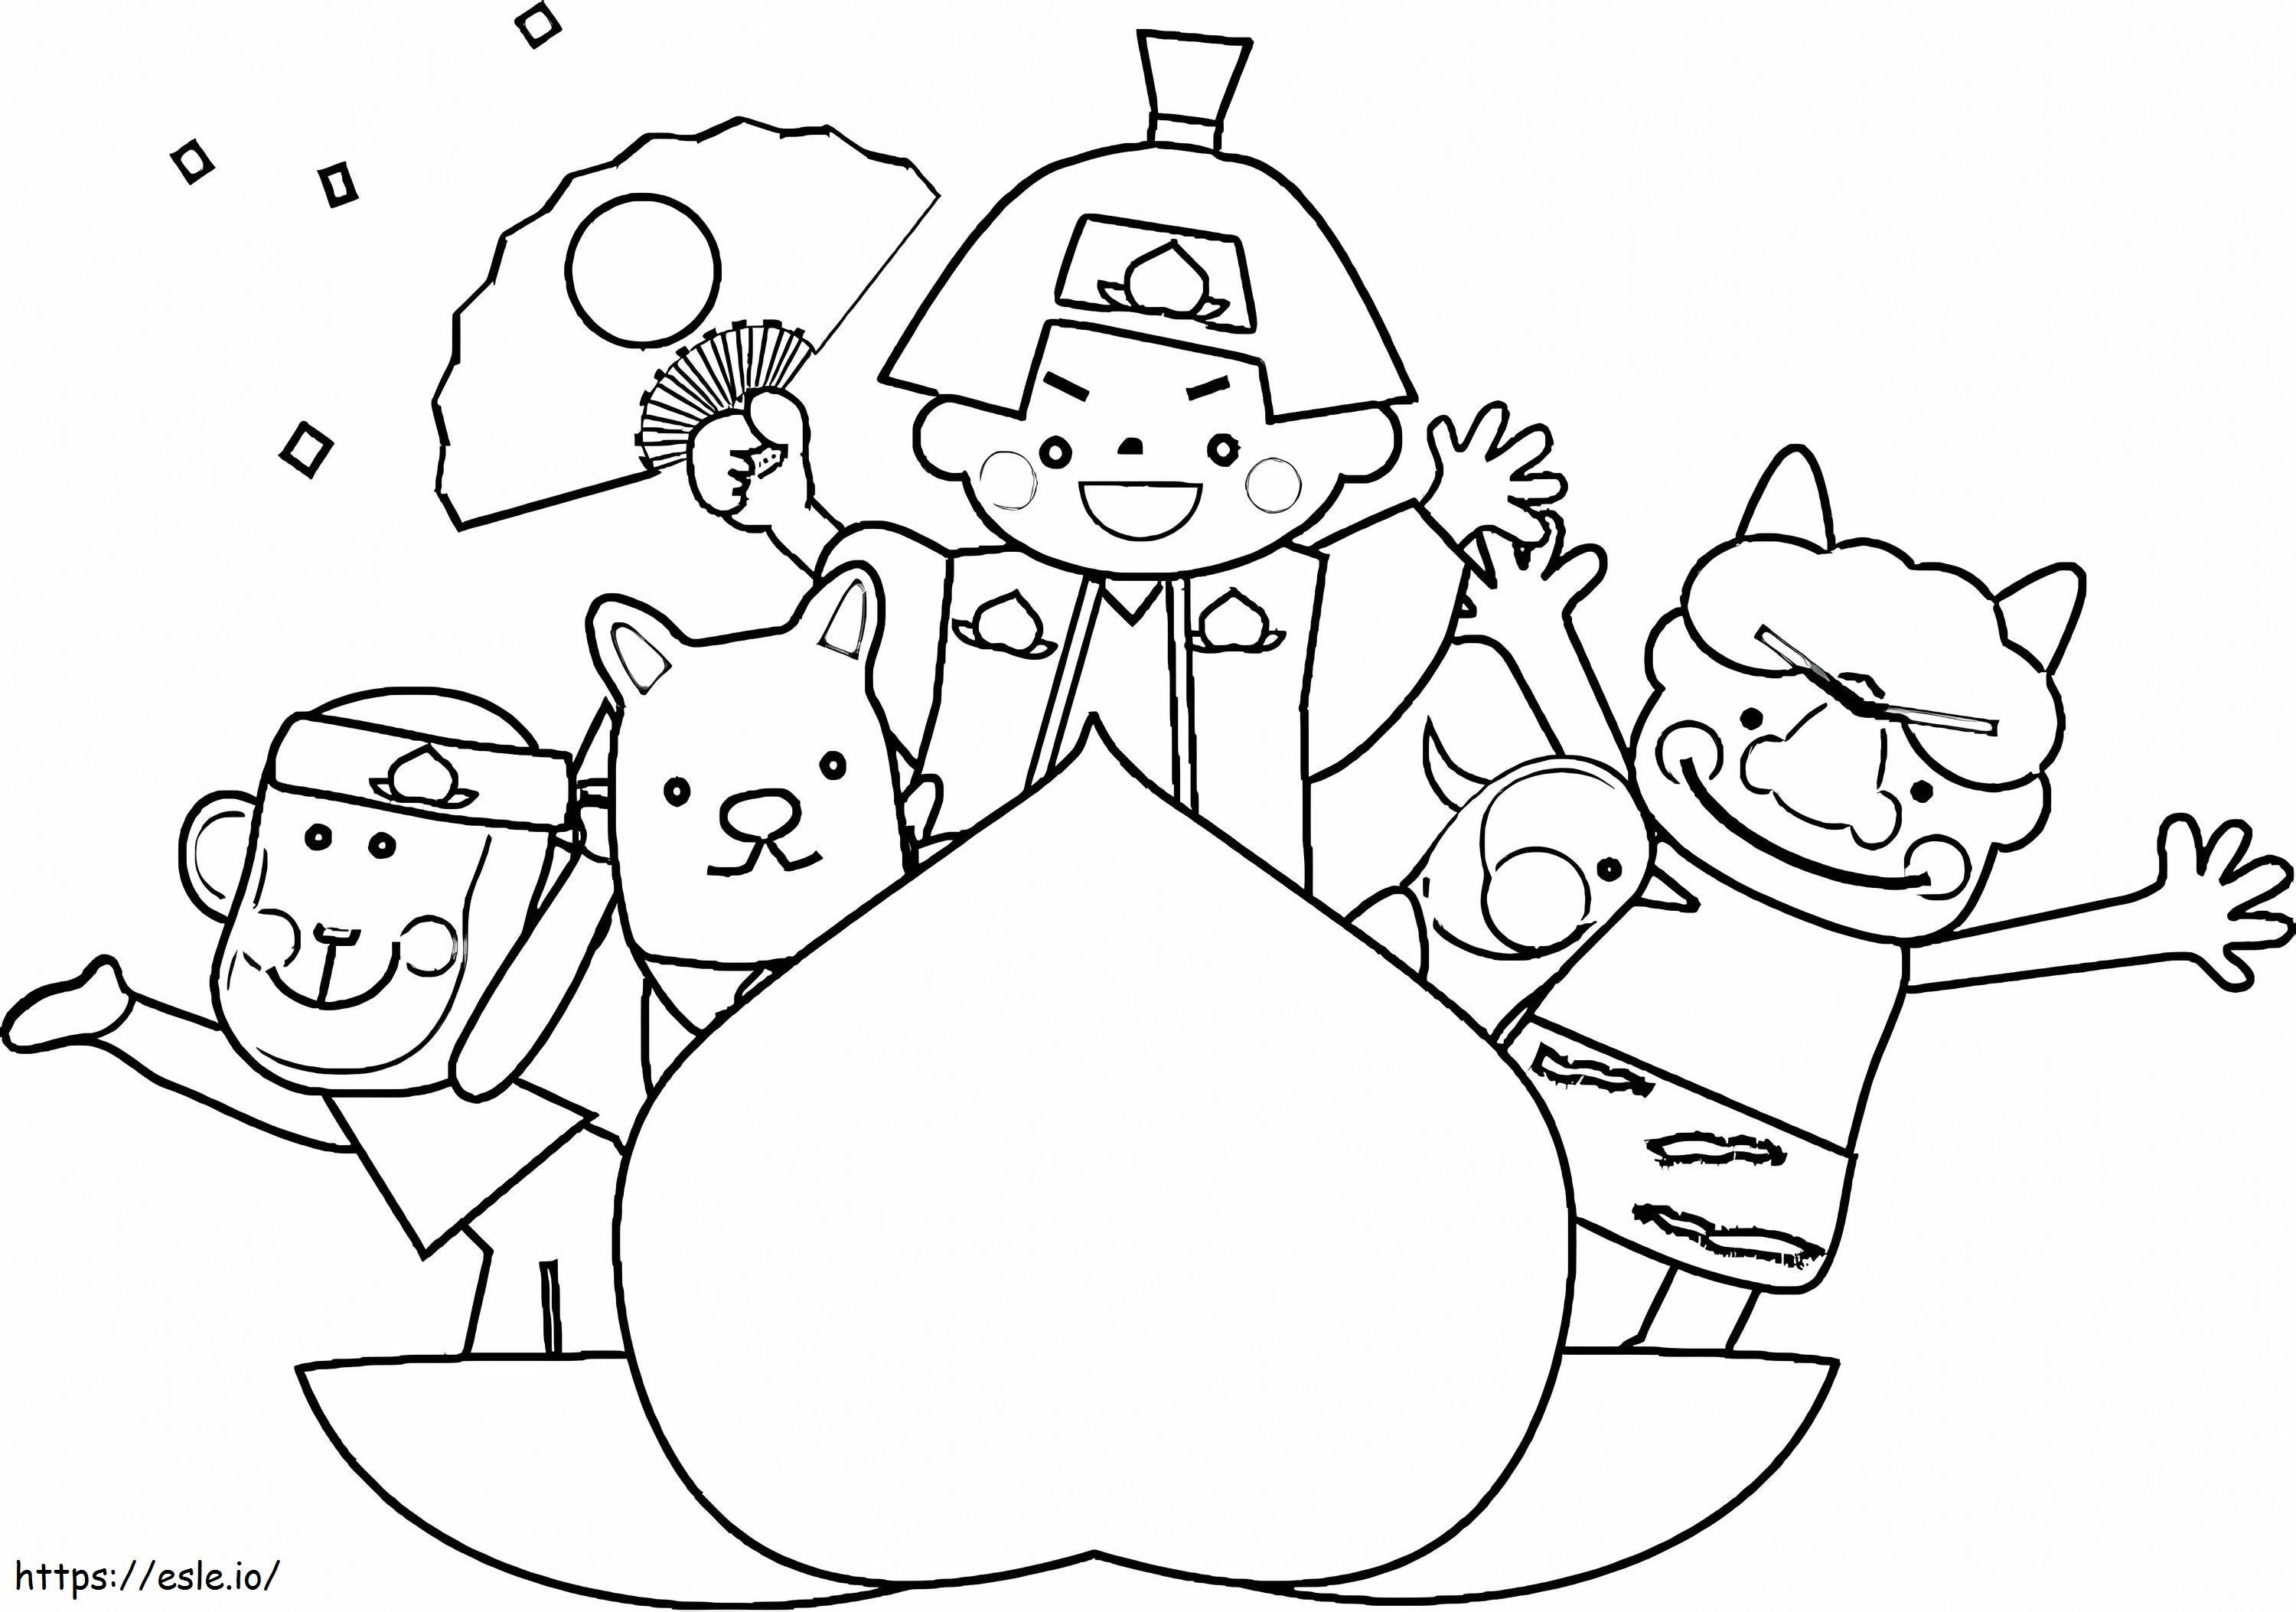 Personagens de Momotaro para colorir